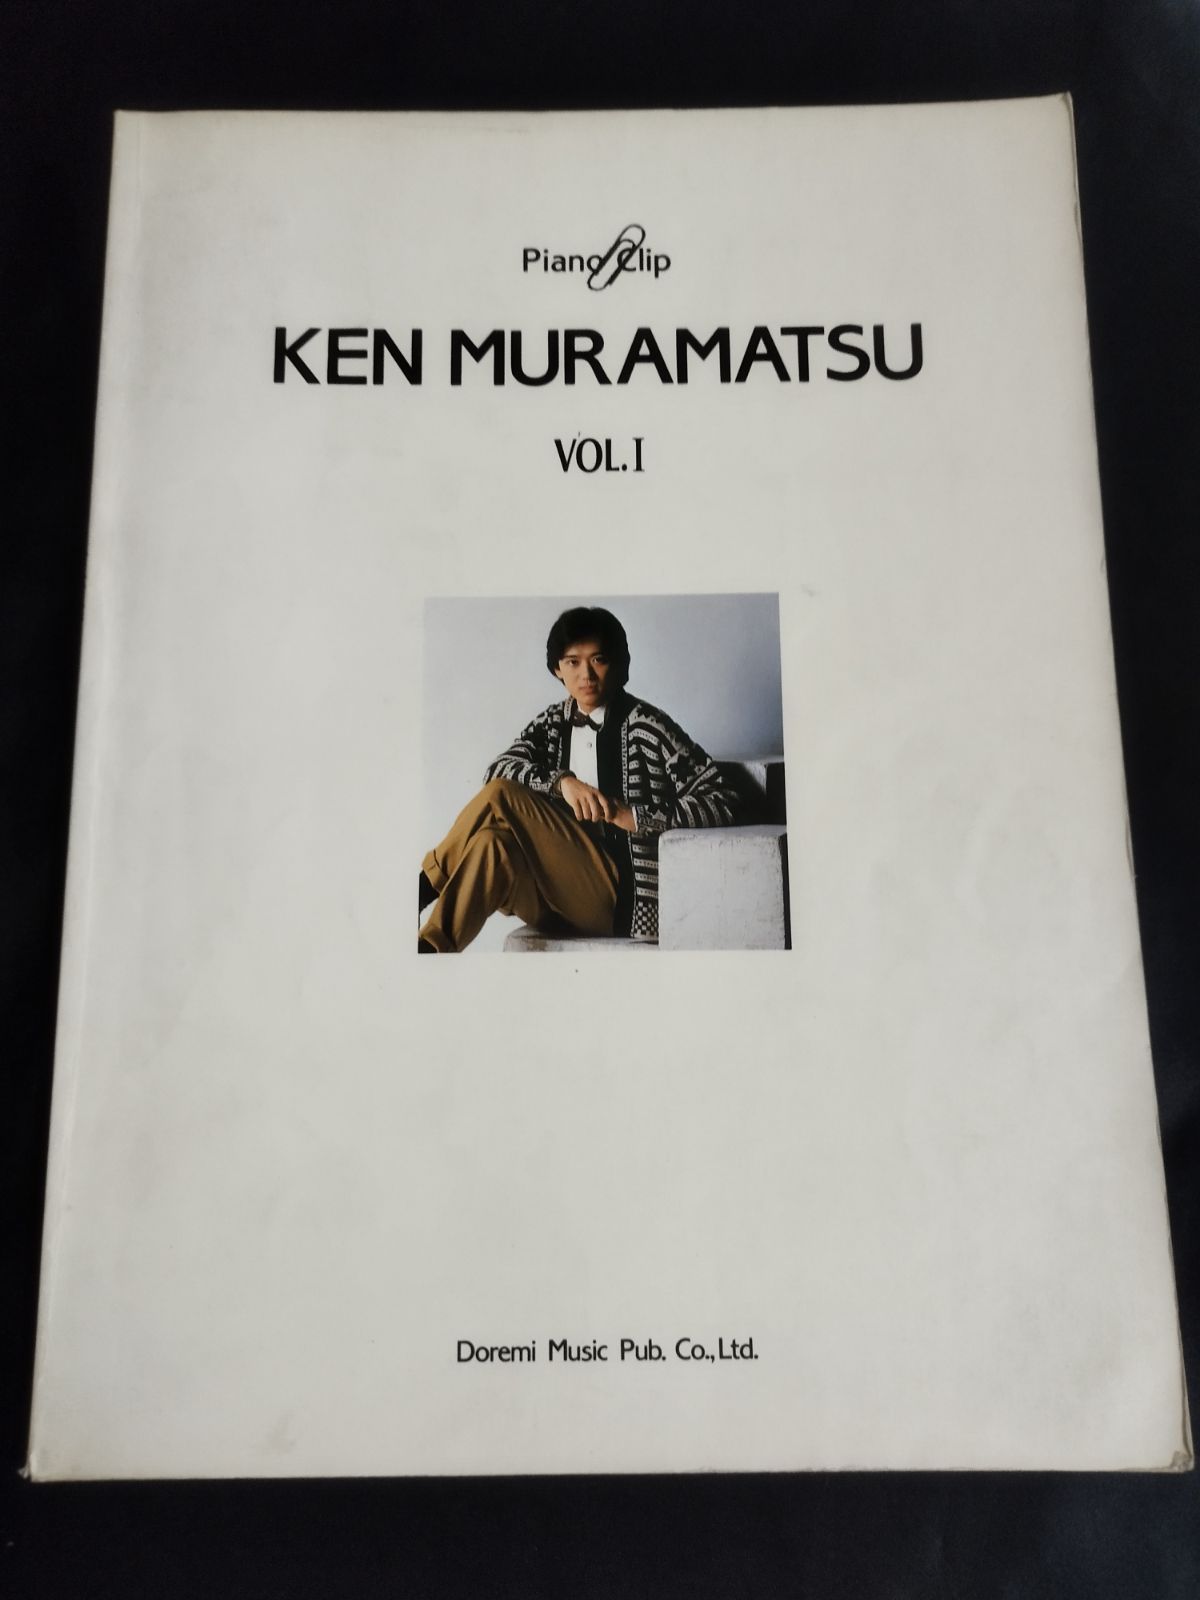 ピアノ・ソロ ピアノクリップ 村松健 Vol.1 楽譜 棚Sa4 - メルカリ